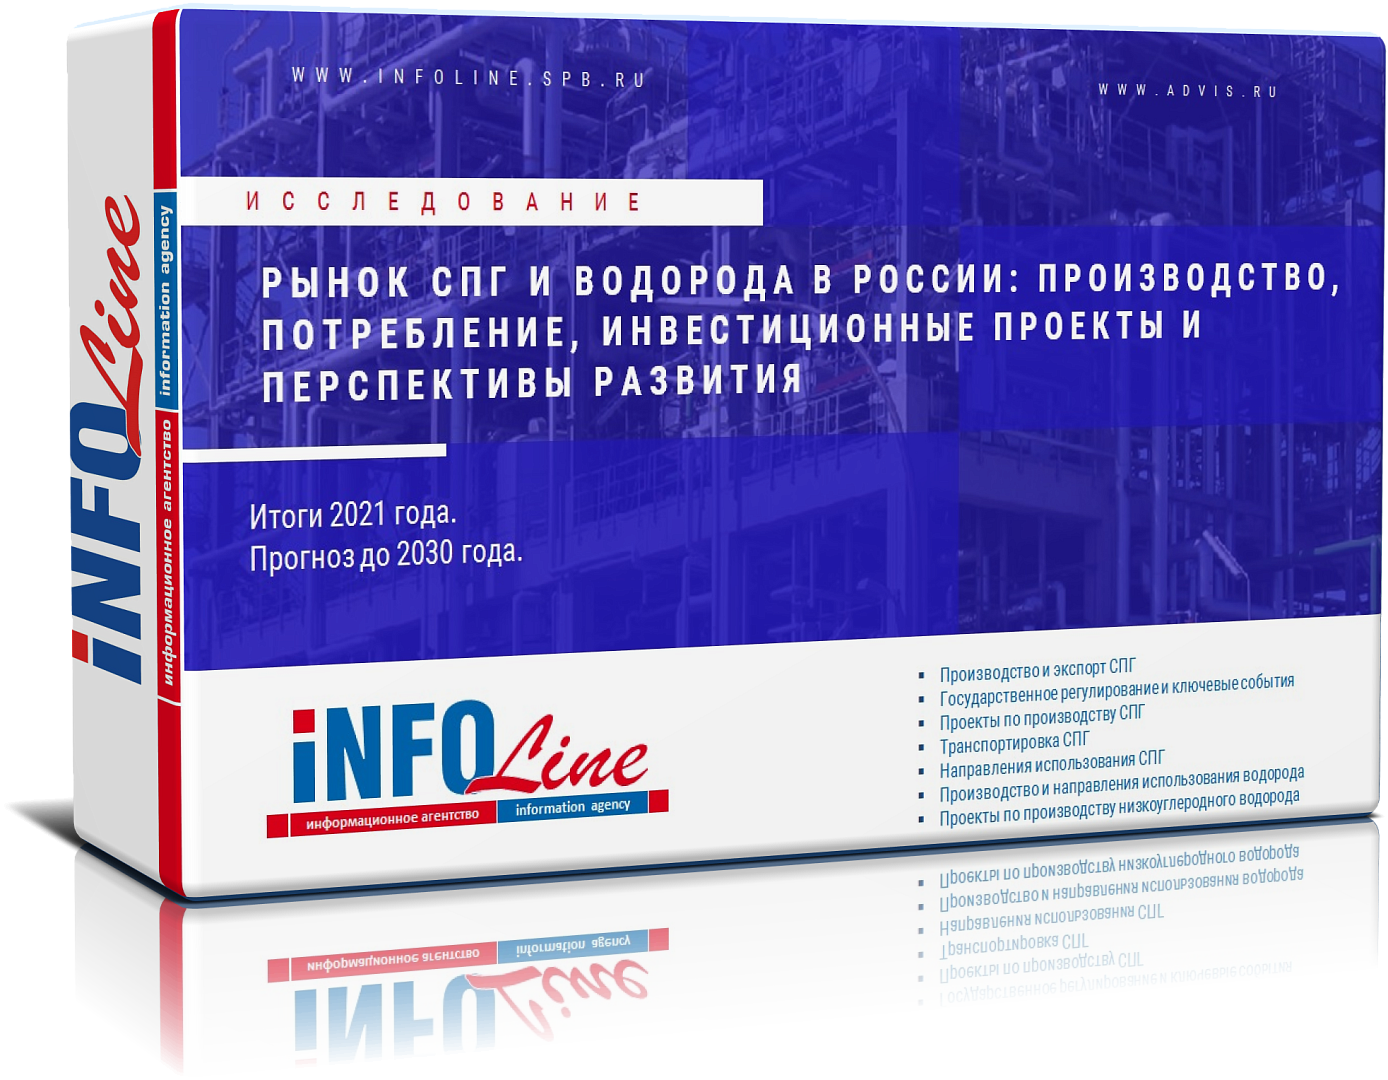 Исследование "Рынок СПГ и водорода в России: производство, потребление, инвестиционные проекты и перспективы развития"